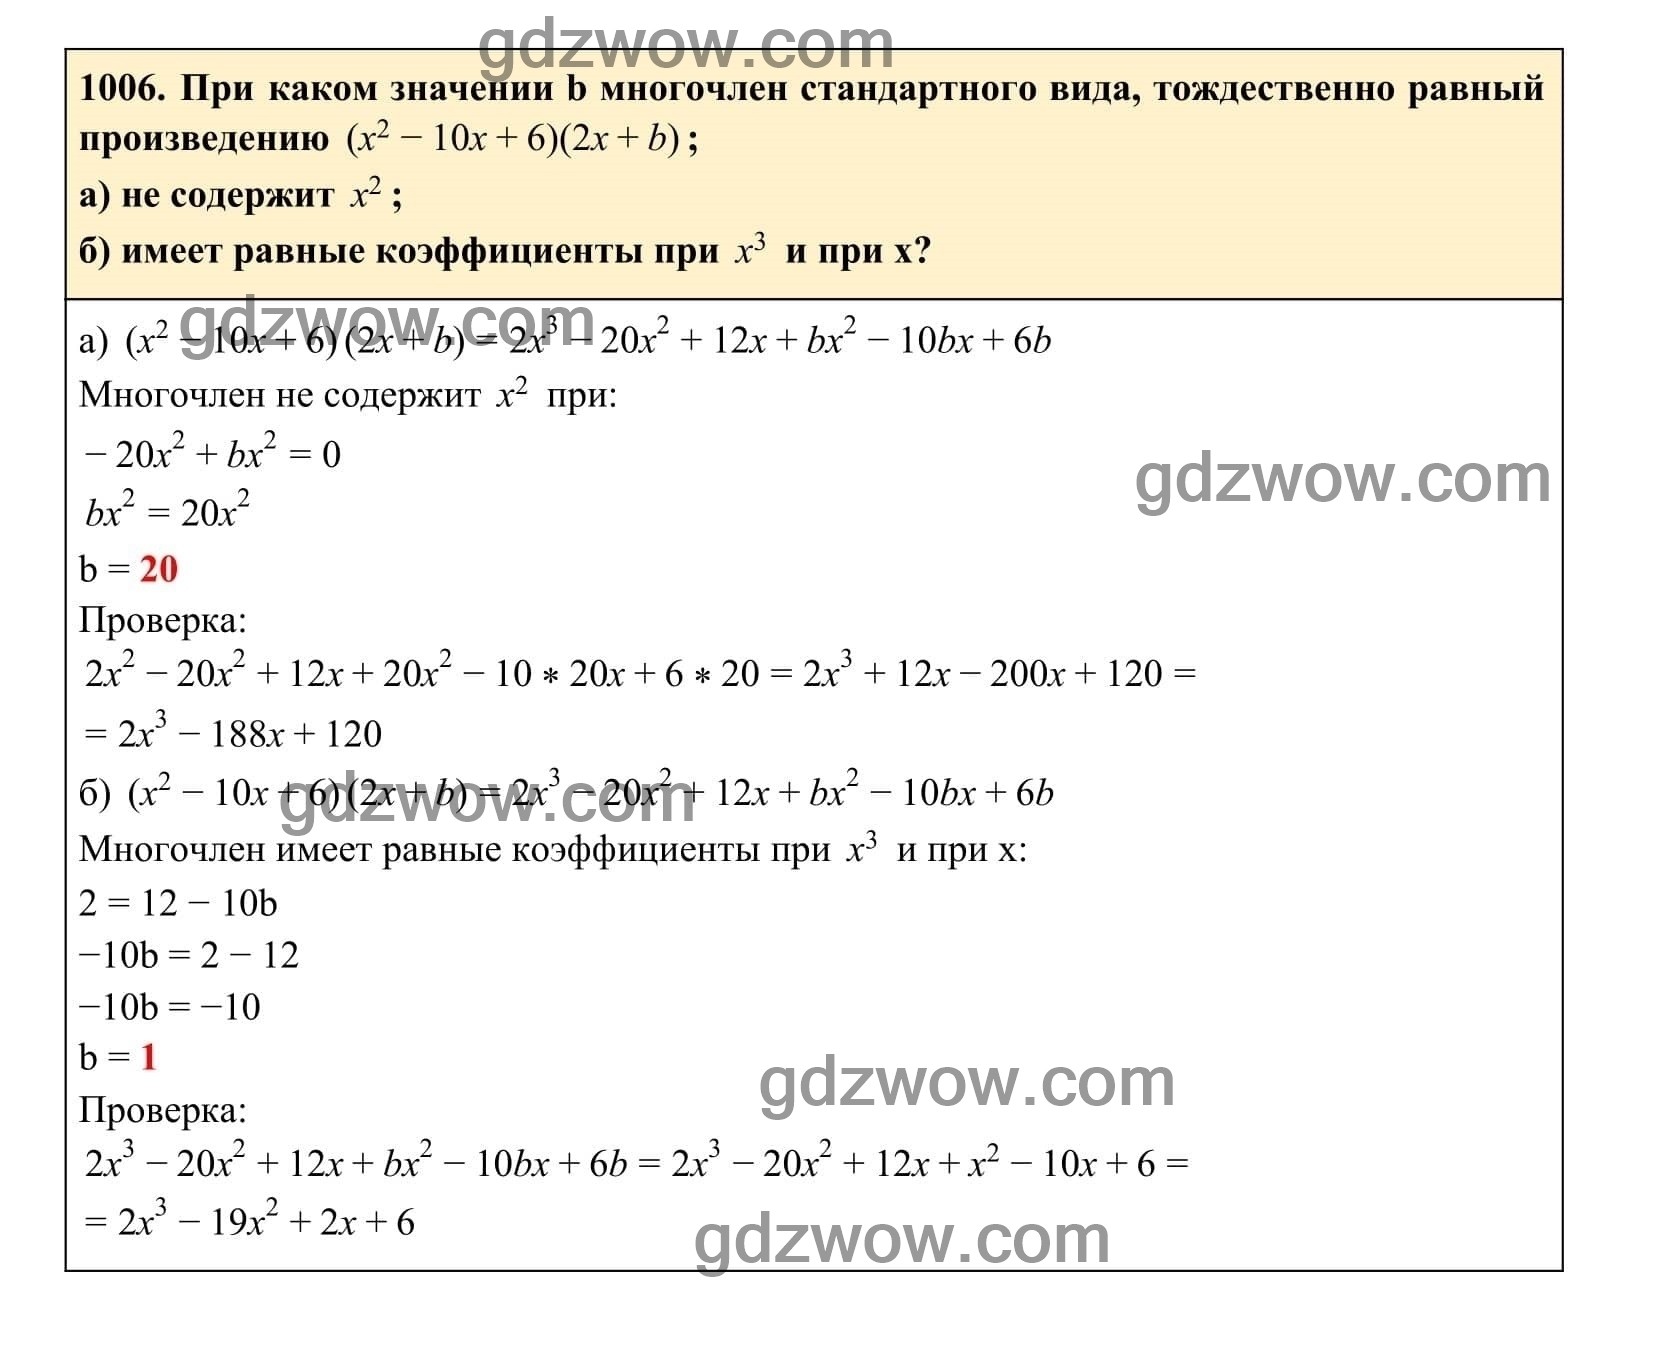 Упражнение 1006 - ГДЗ по Алгебре 7 класс Учебник Макарычев (решебник) - GDZwow